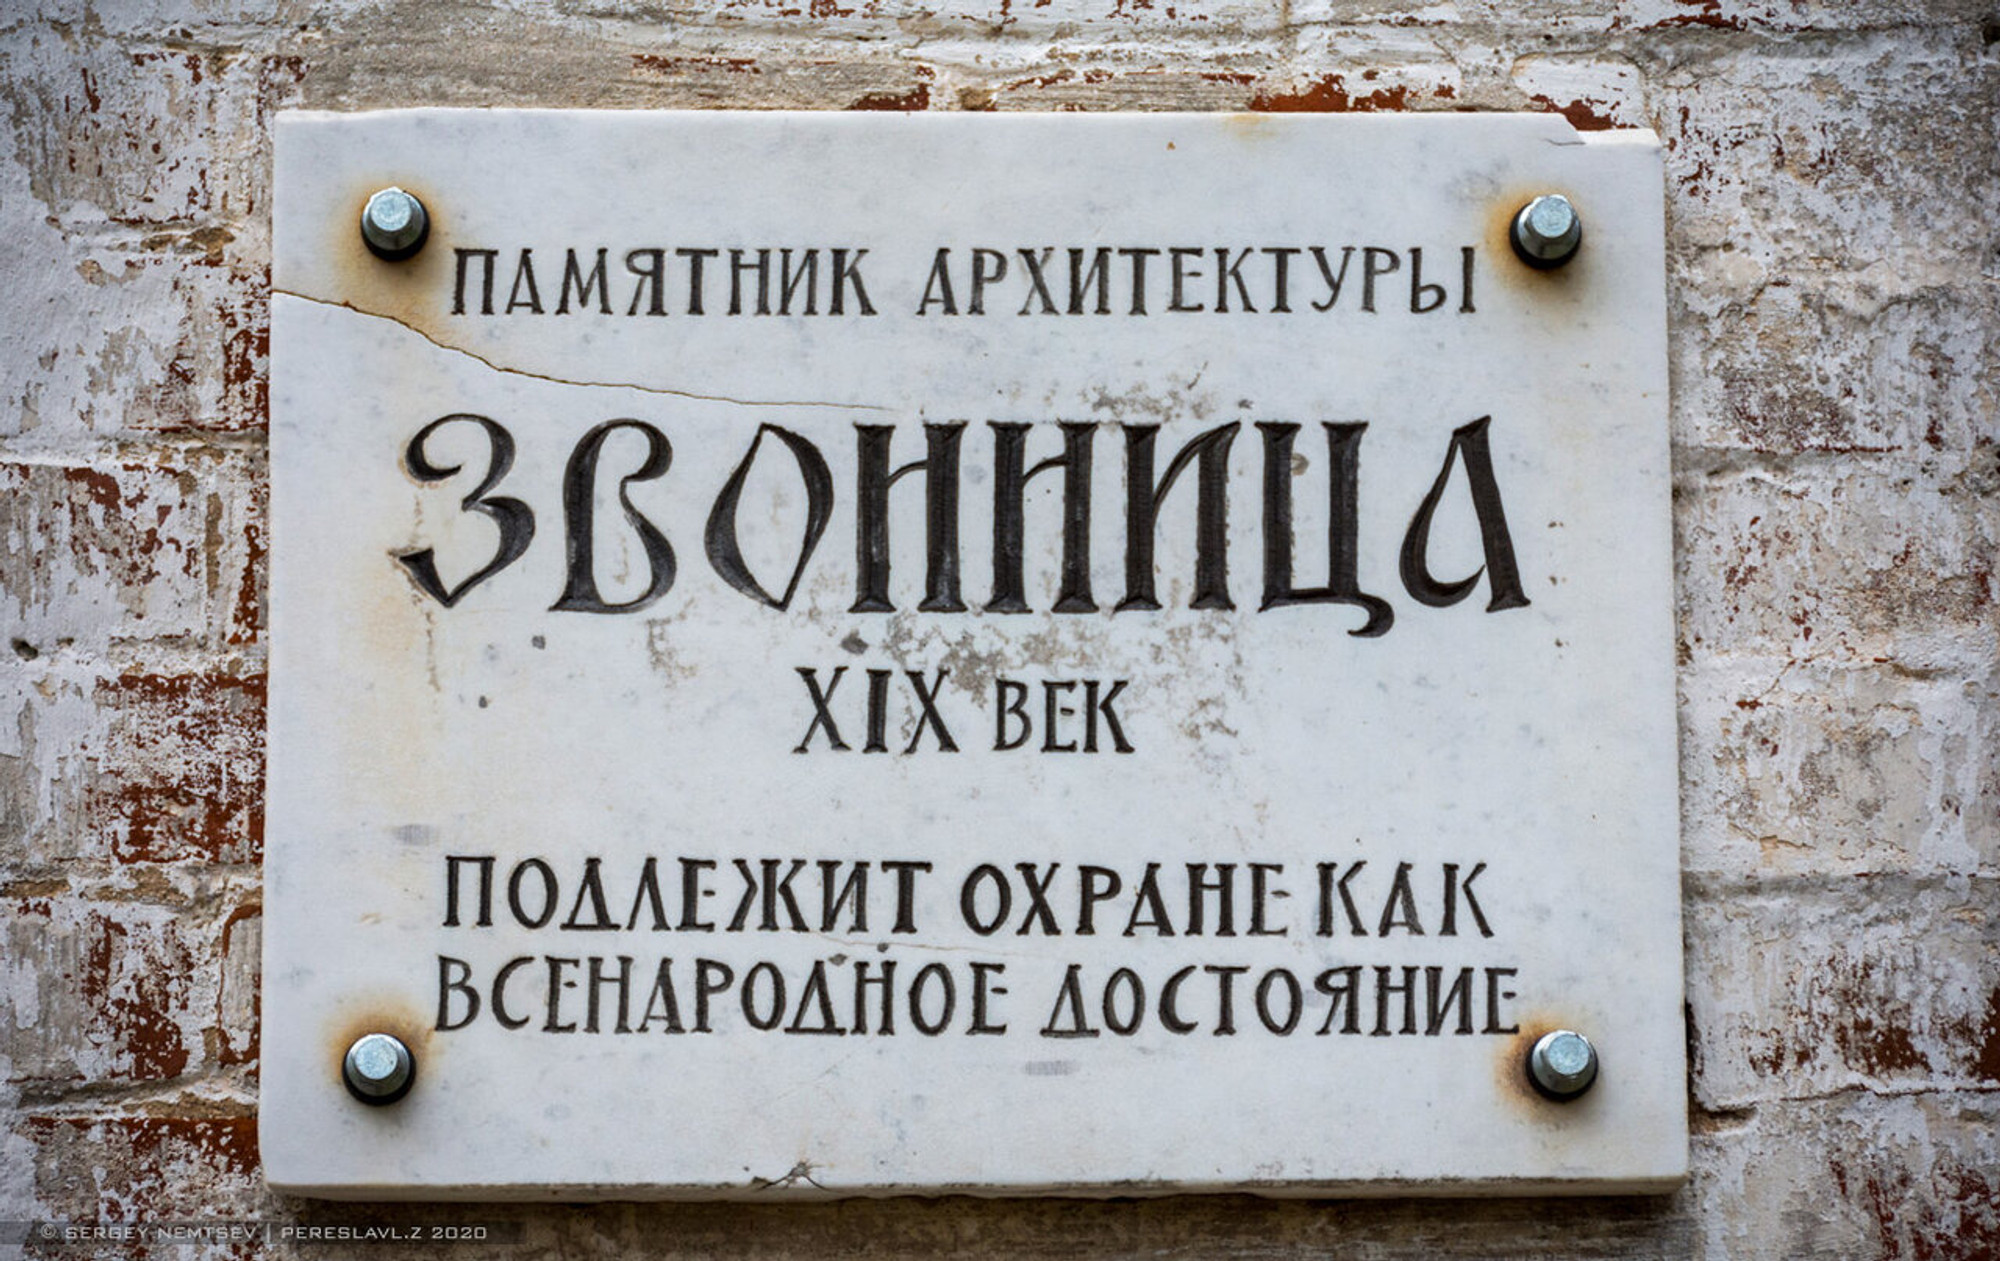 Горицкий Успенский монастырь (Музей)